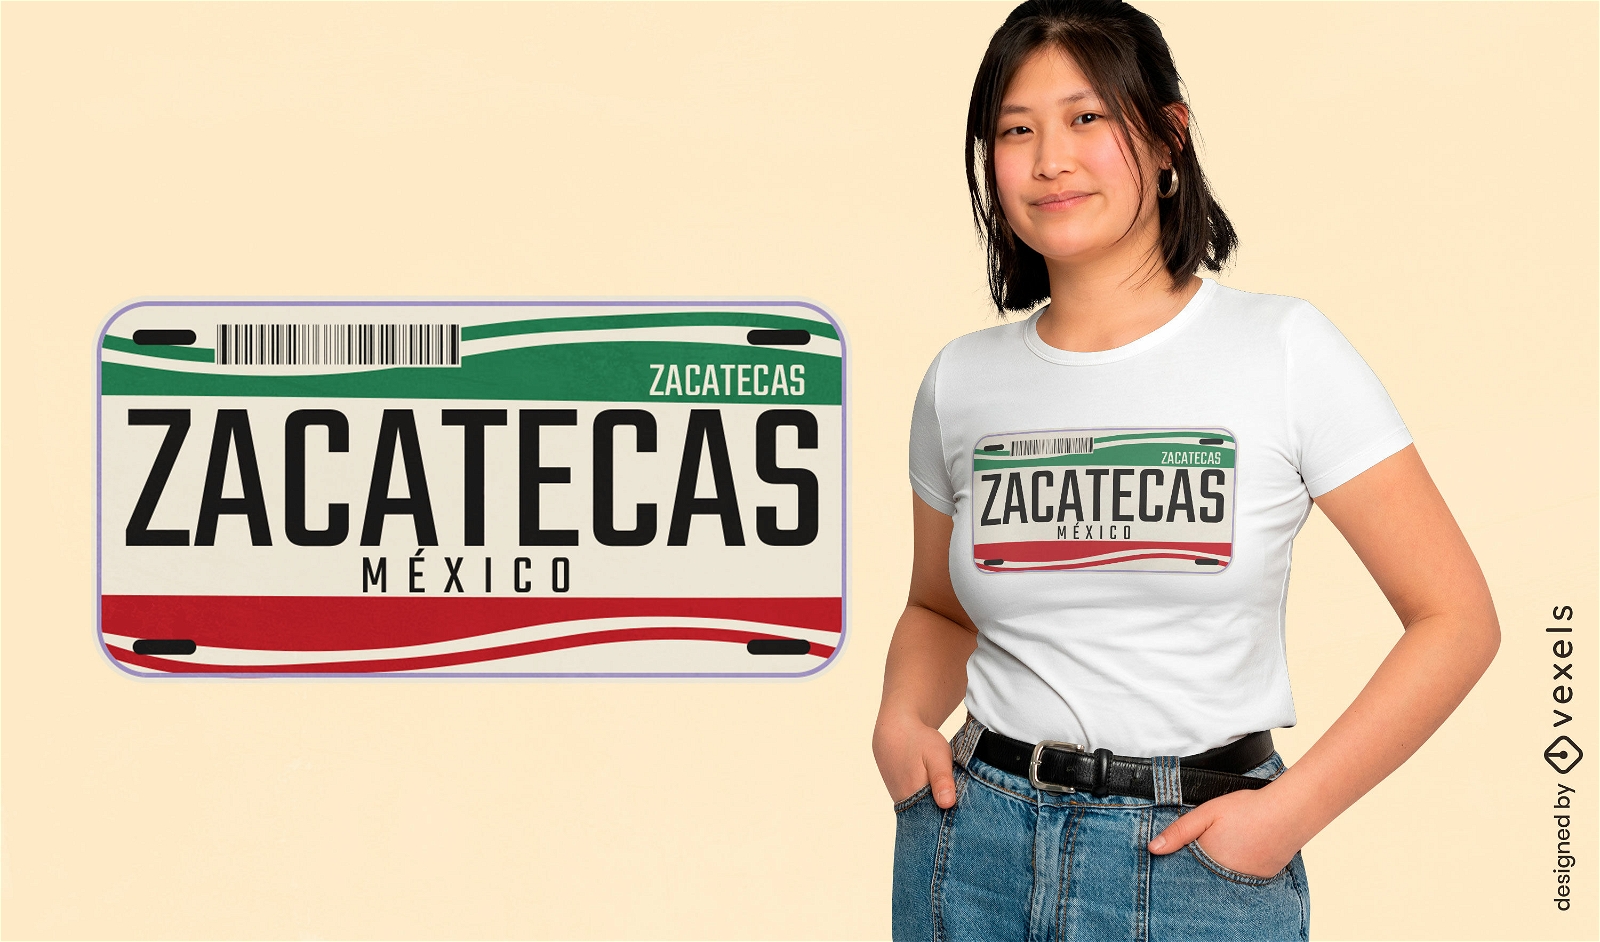 Zacatecas Mexico license plate t-shirt design